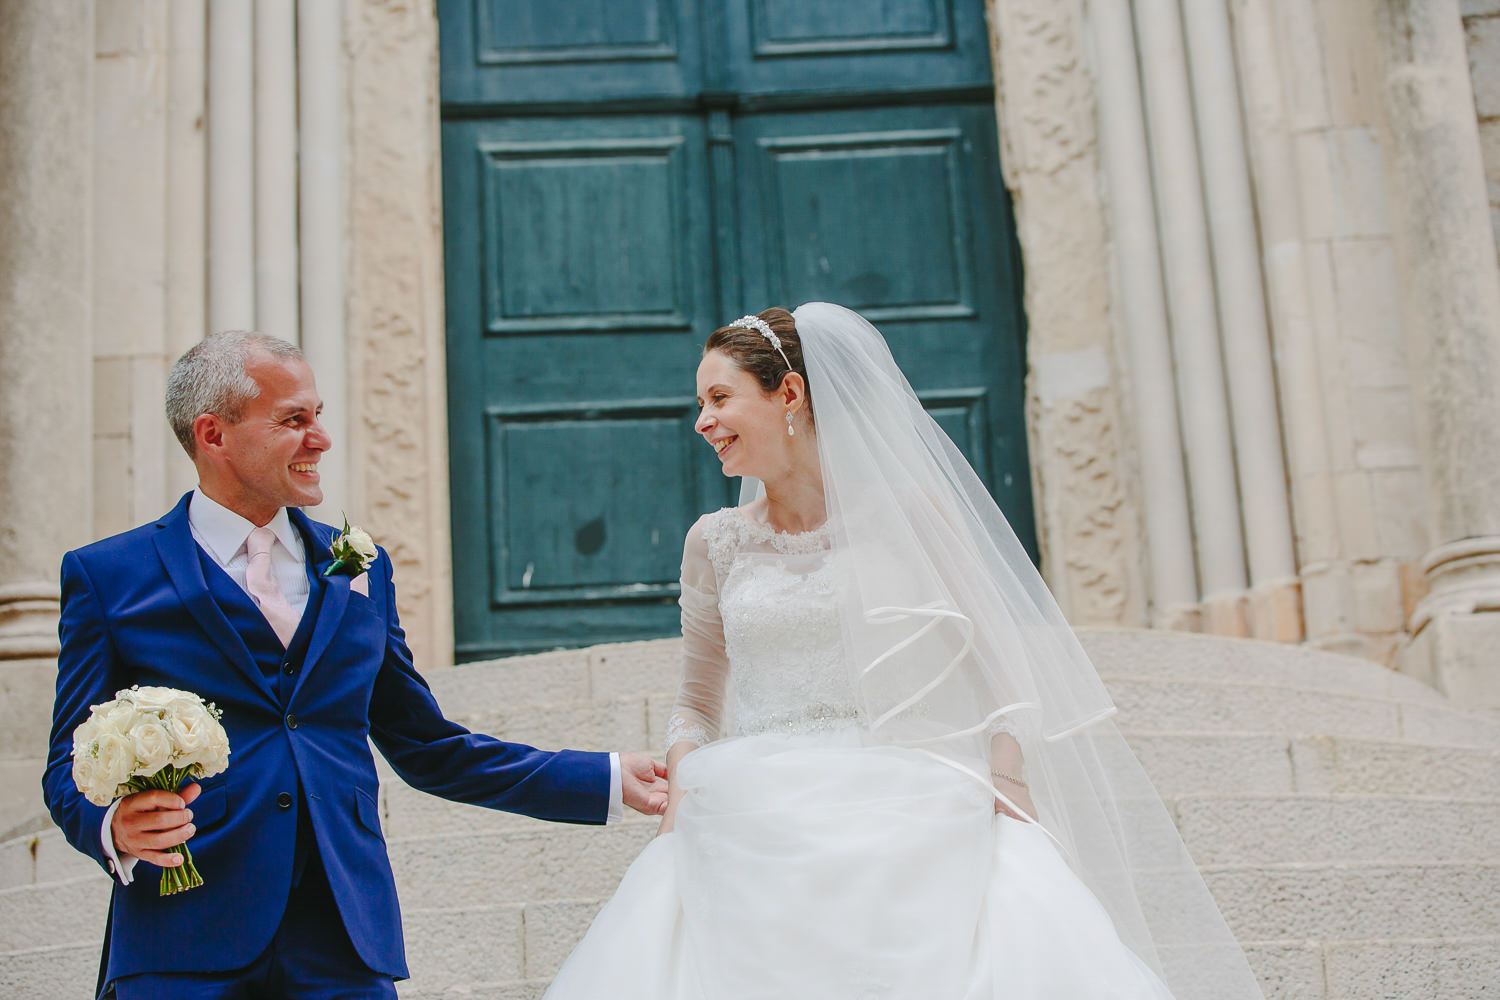 Bride and groom in front of green door, walking down steps